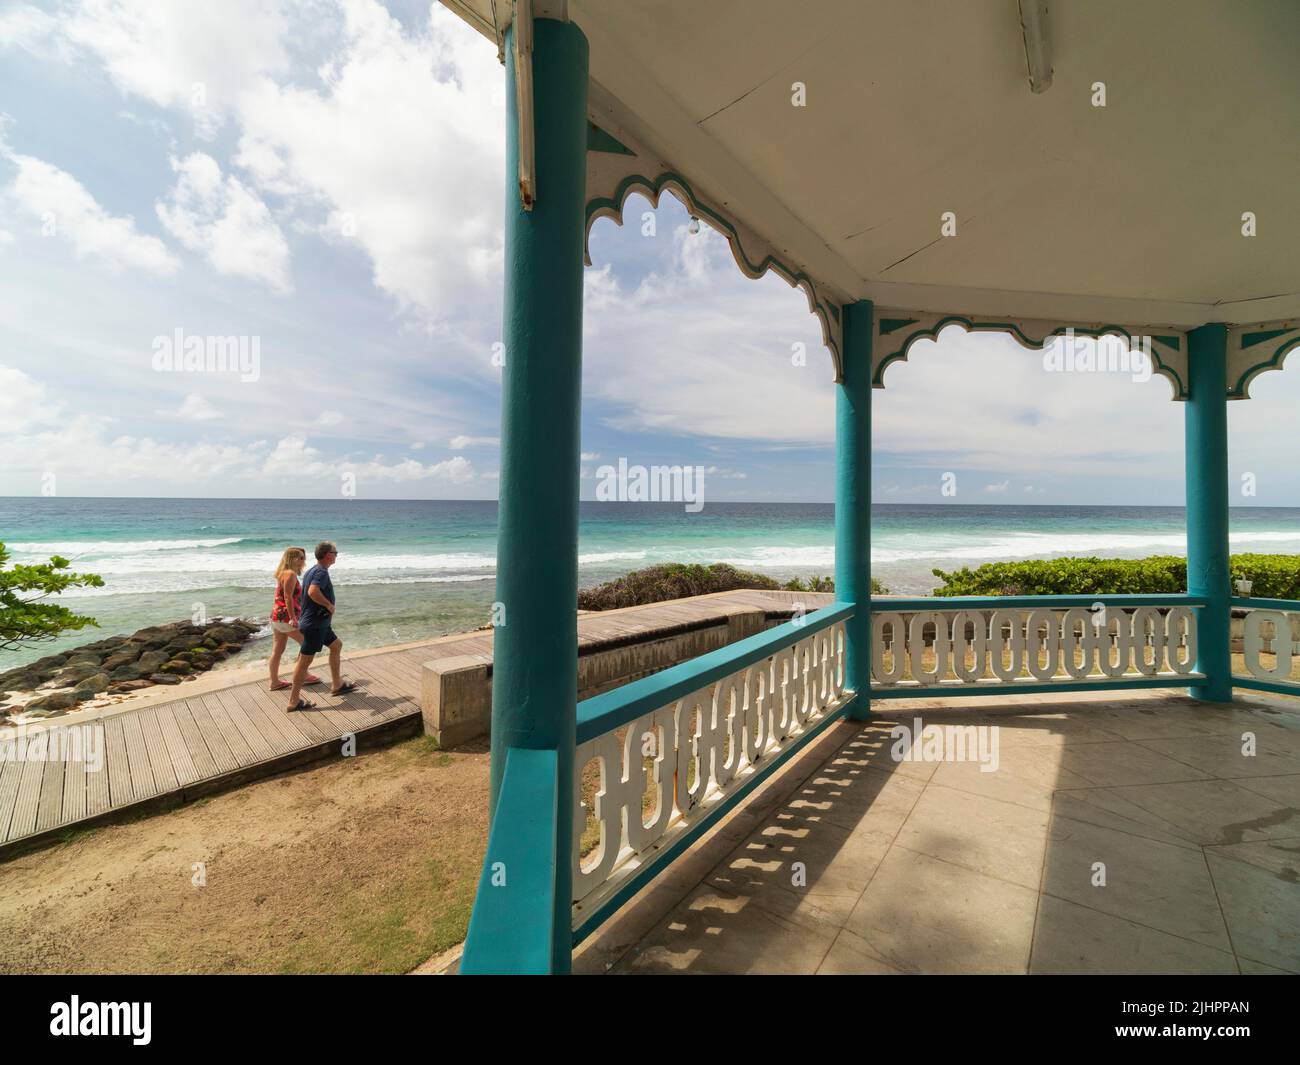 Barbados, isla caribeña - costa oeste. El paseo marítimo de Sir Richard Haynes, Hastings. Soporte de banda. Foto de stock